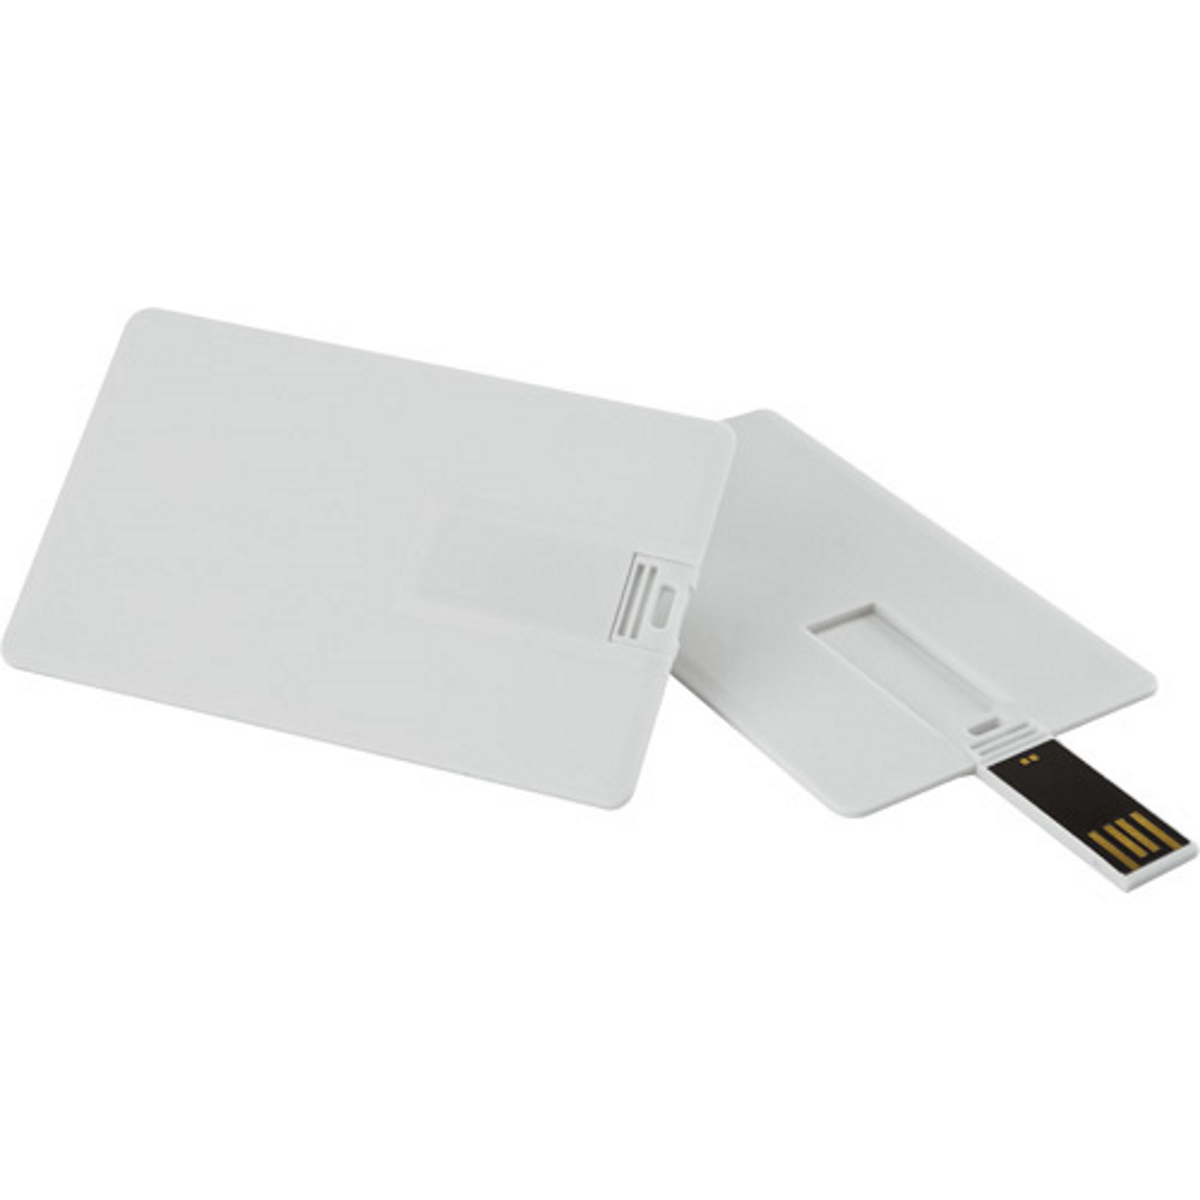 USB GERMANY ® Kreditkarte USB-Stick 64 (Weiss, GB)